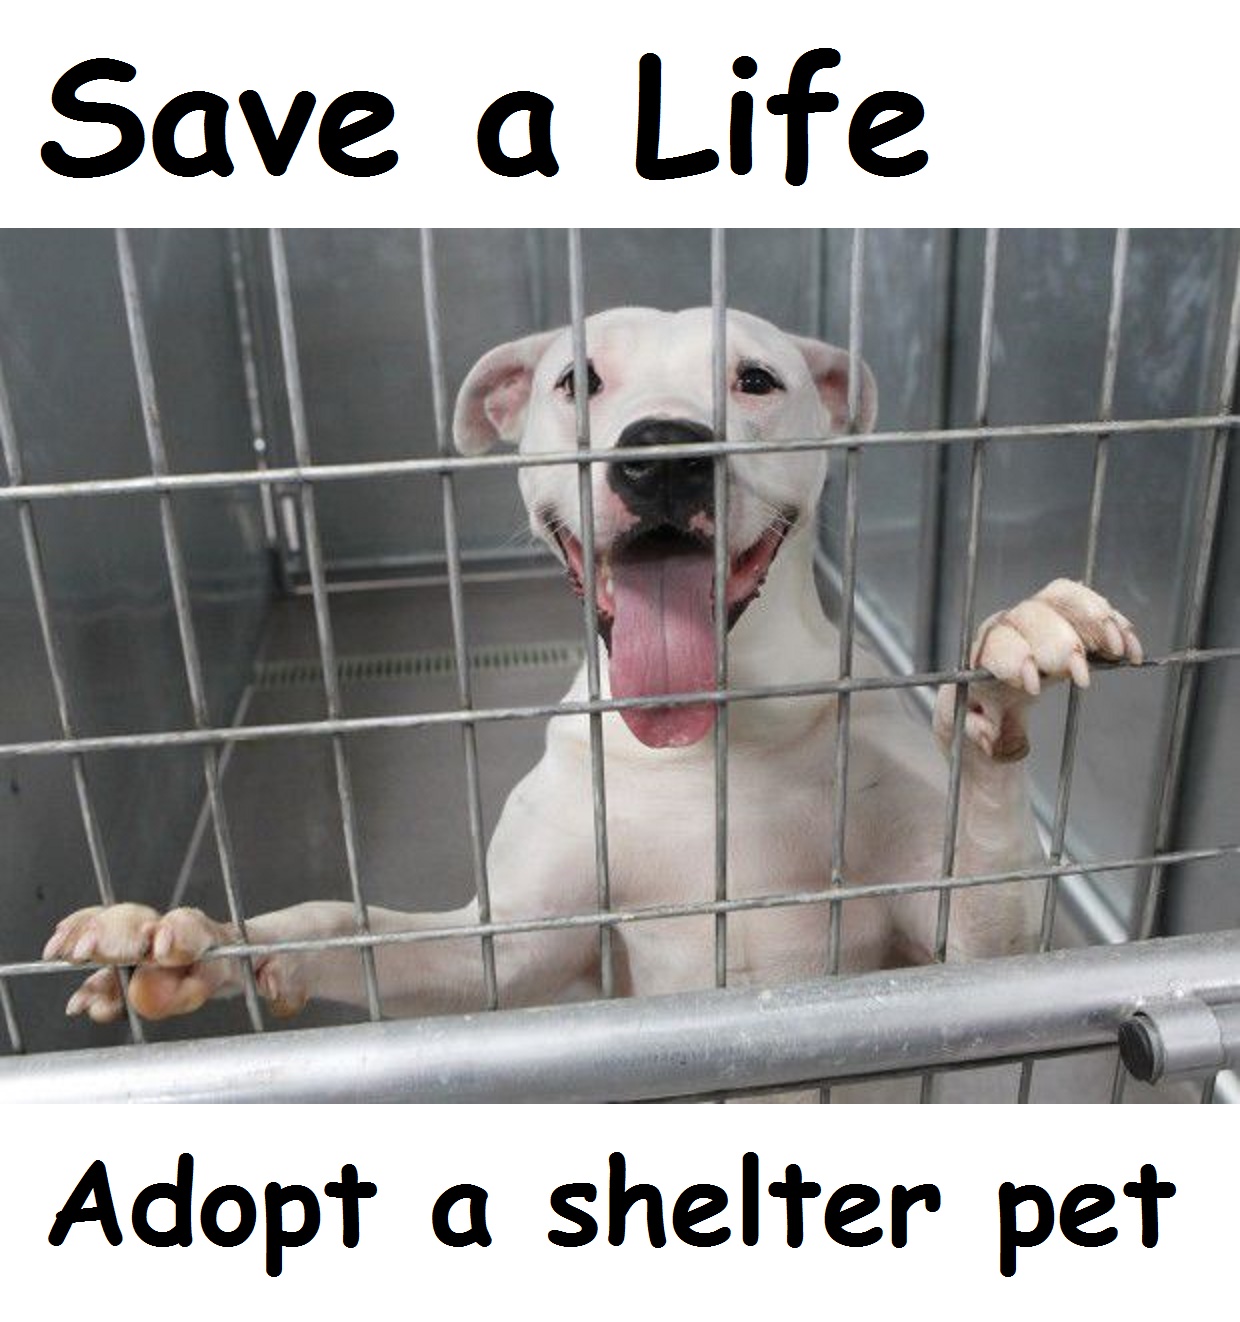 Save a Life, Adopt a shelter pet